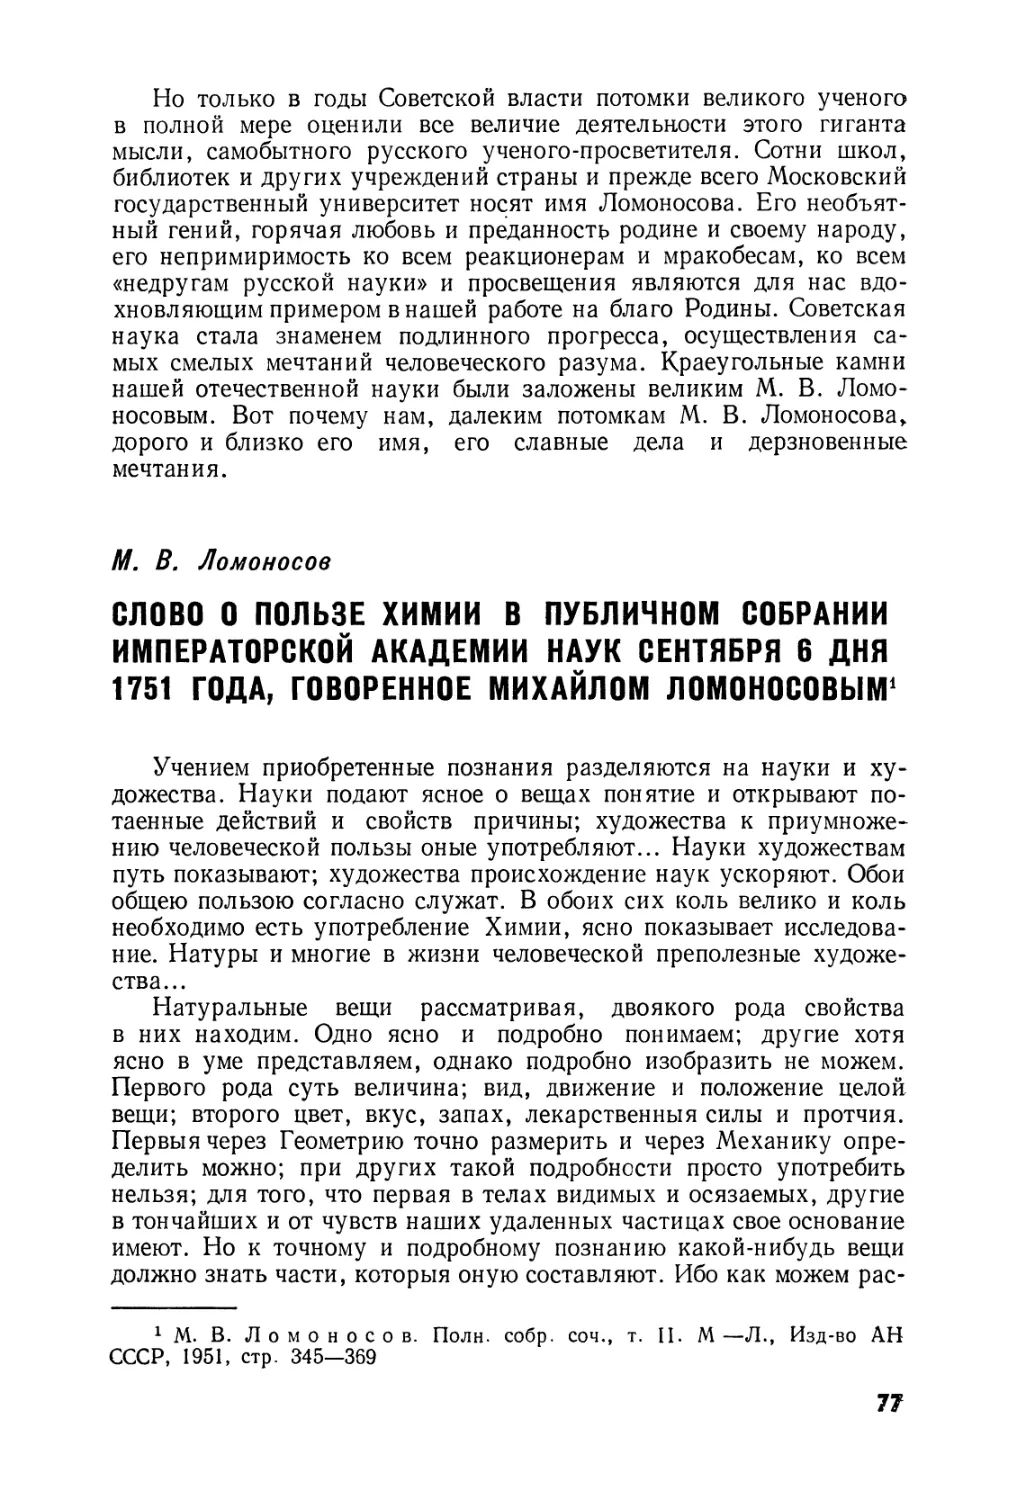 Слово  о  пользе  химии  в  Публичном  собрании  императорской  Академии наук  сентября  6  дня  1751  года,  говоренное  Михайлом  Ломоносовым